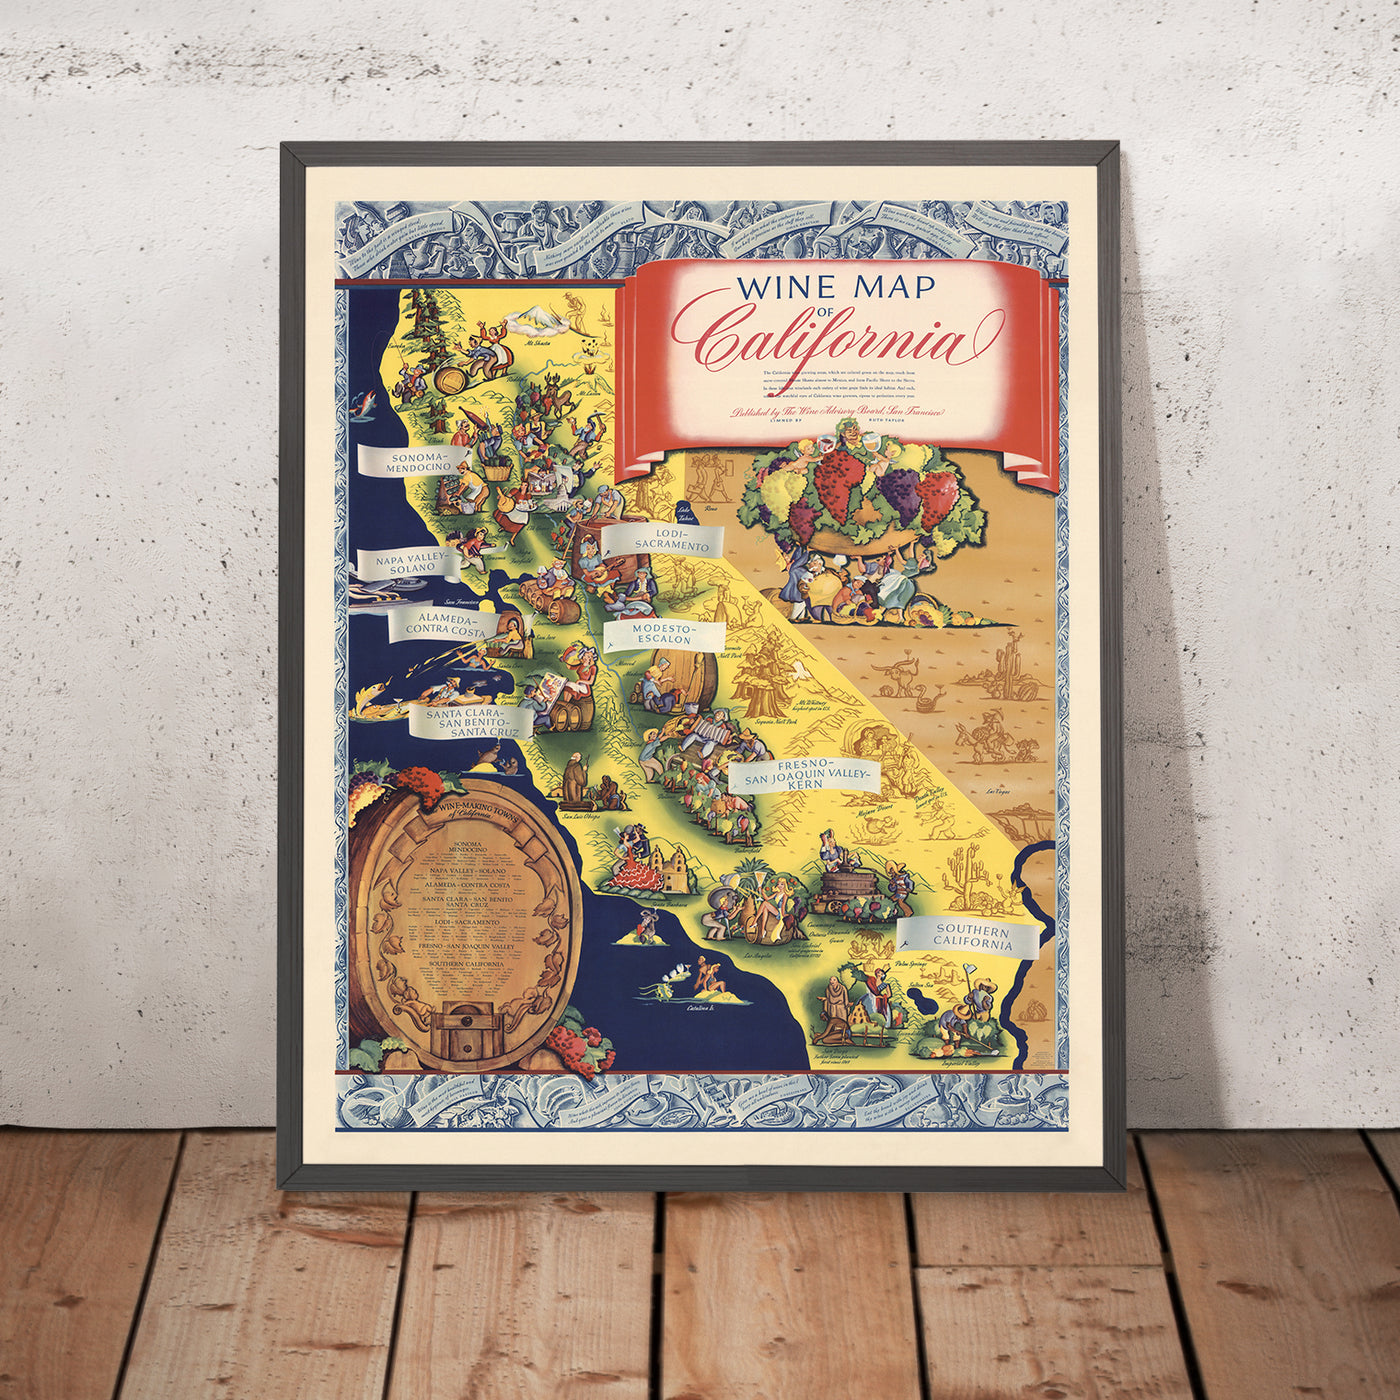 Alte Infografik-Karte der kalifornischen Weinanbaugebiete von White, 1935: Weinherstellung, dekorativer Rand, Vignetten